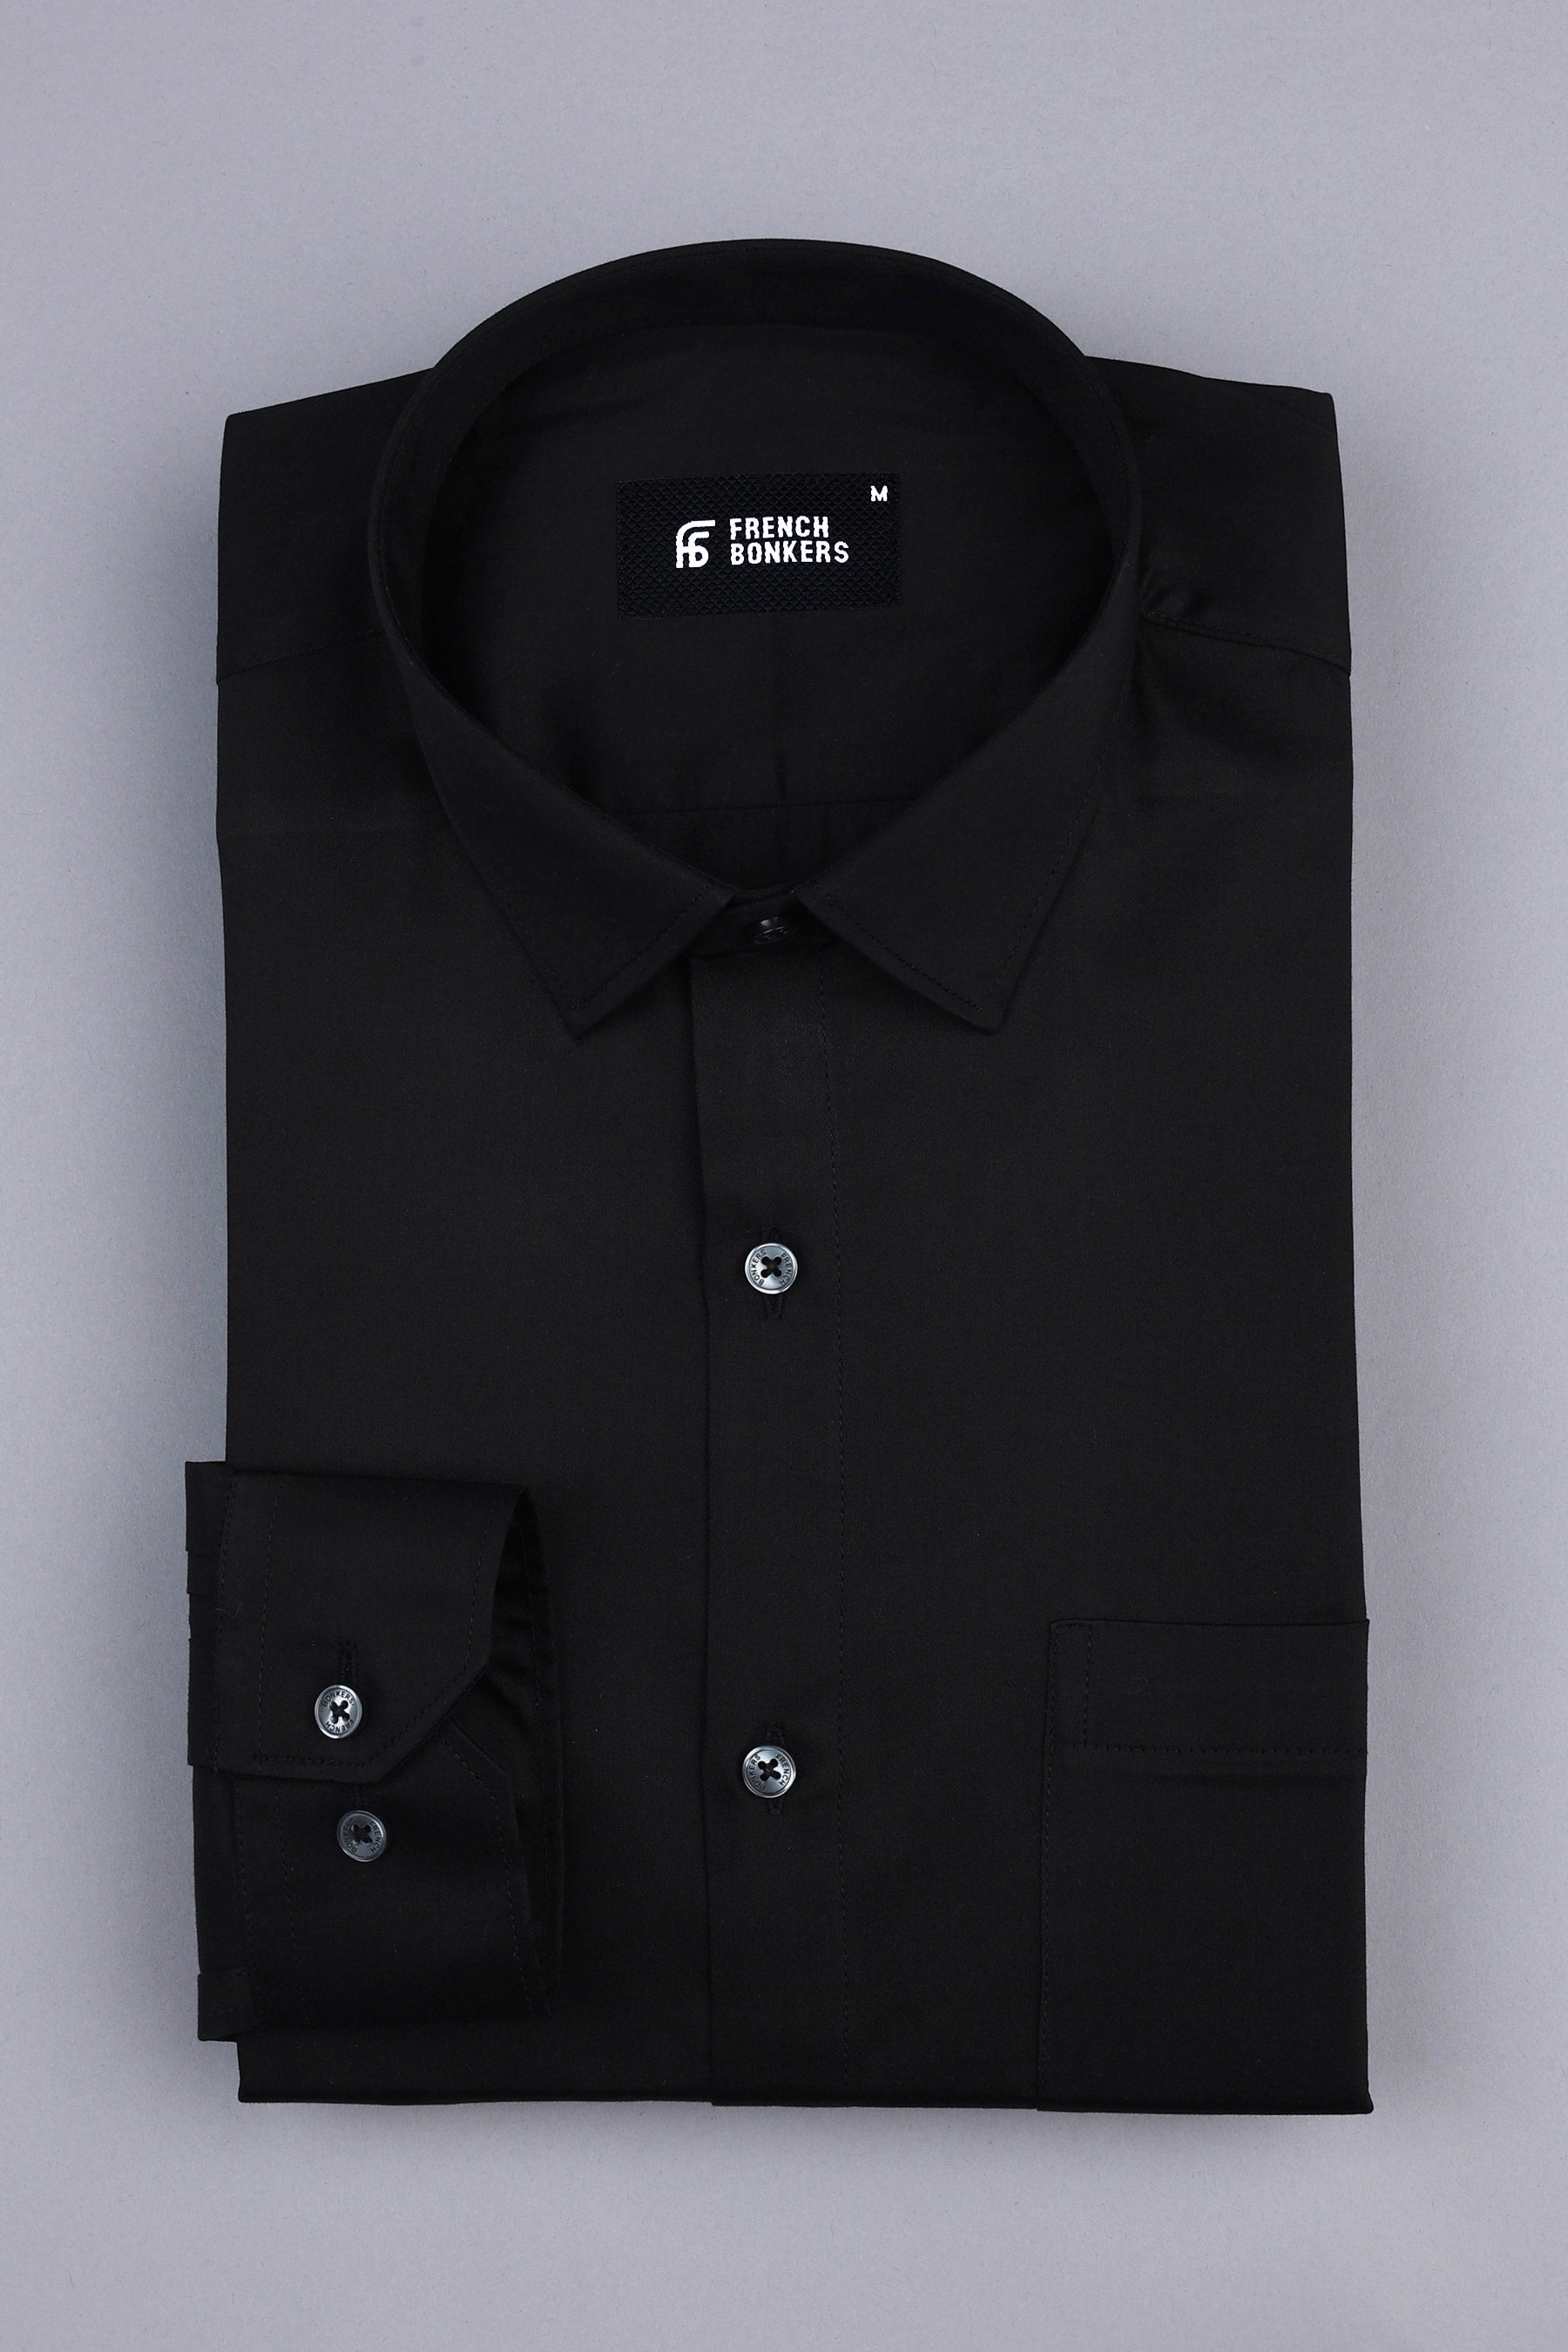 Coal black cotton satin shirt